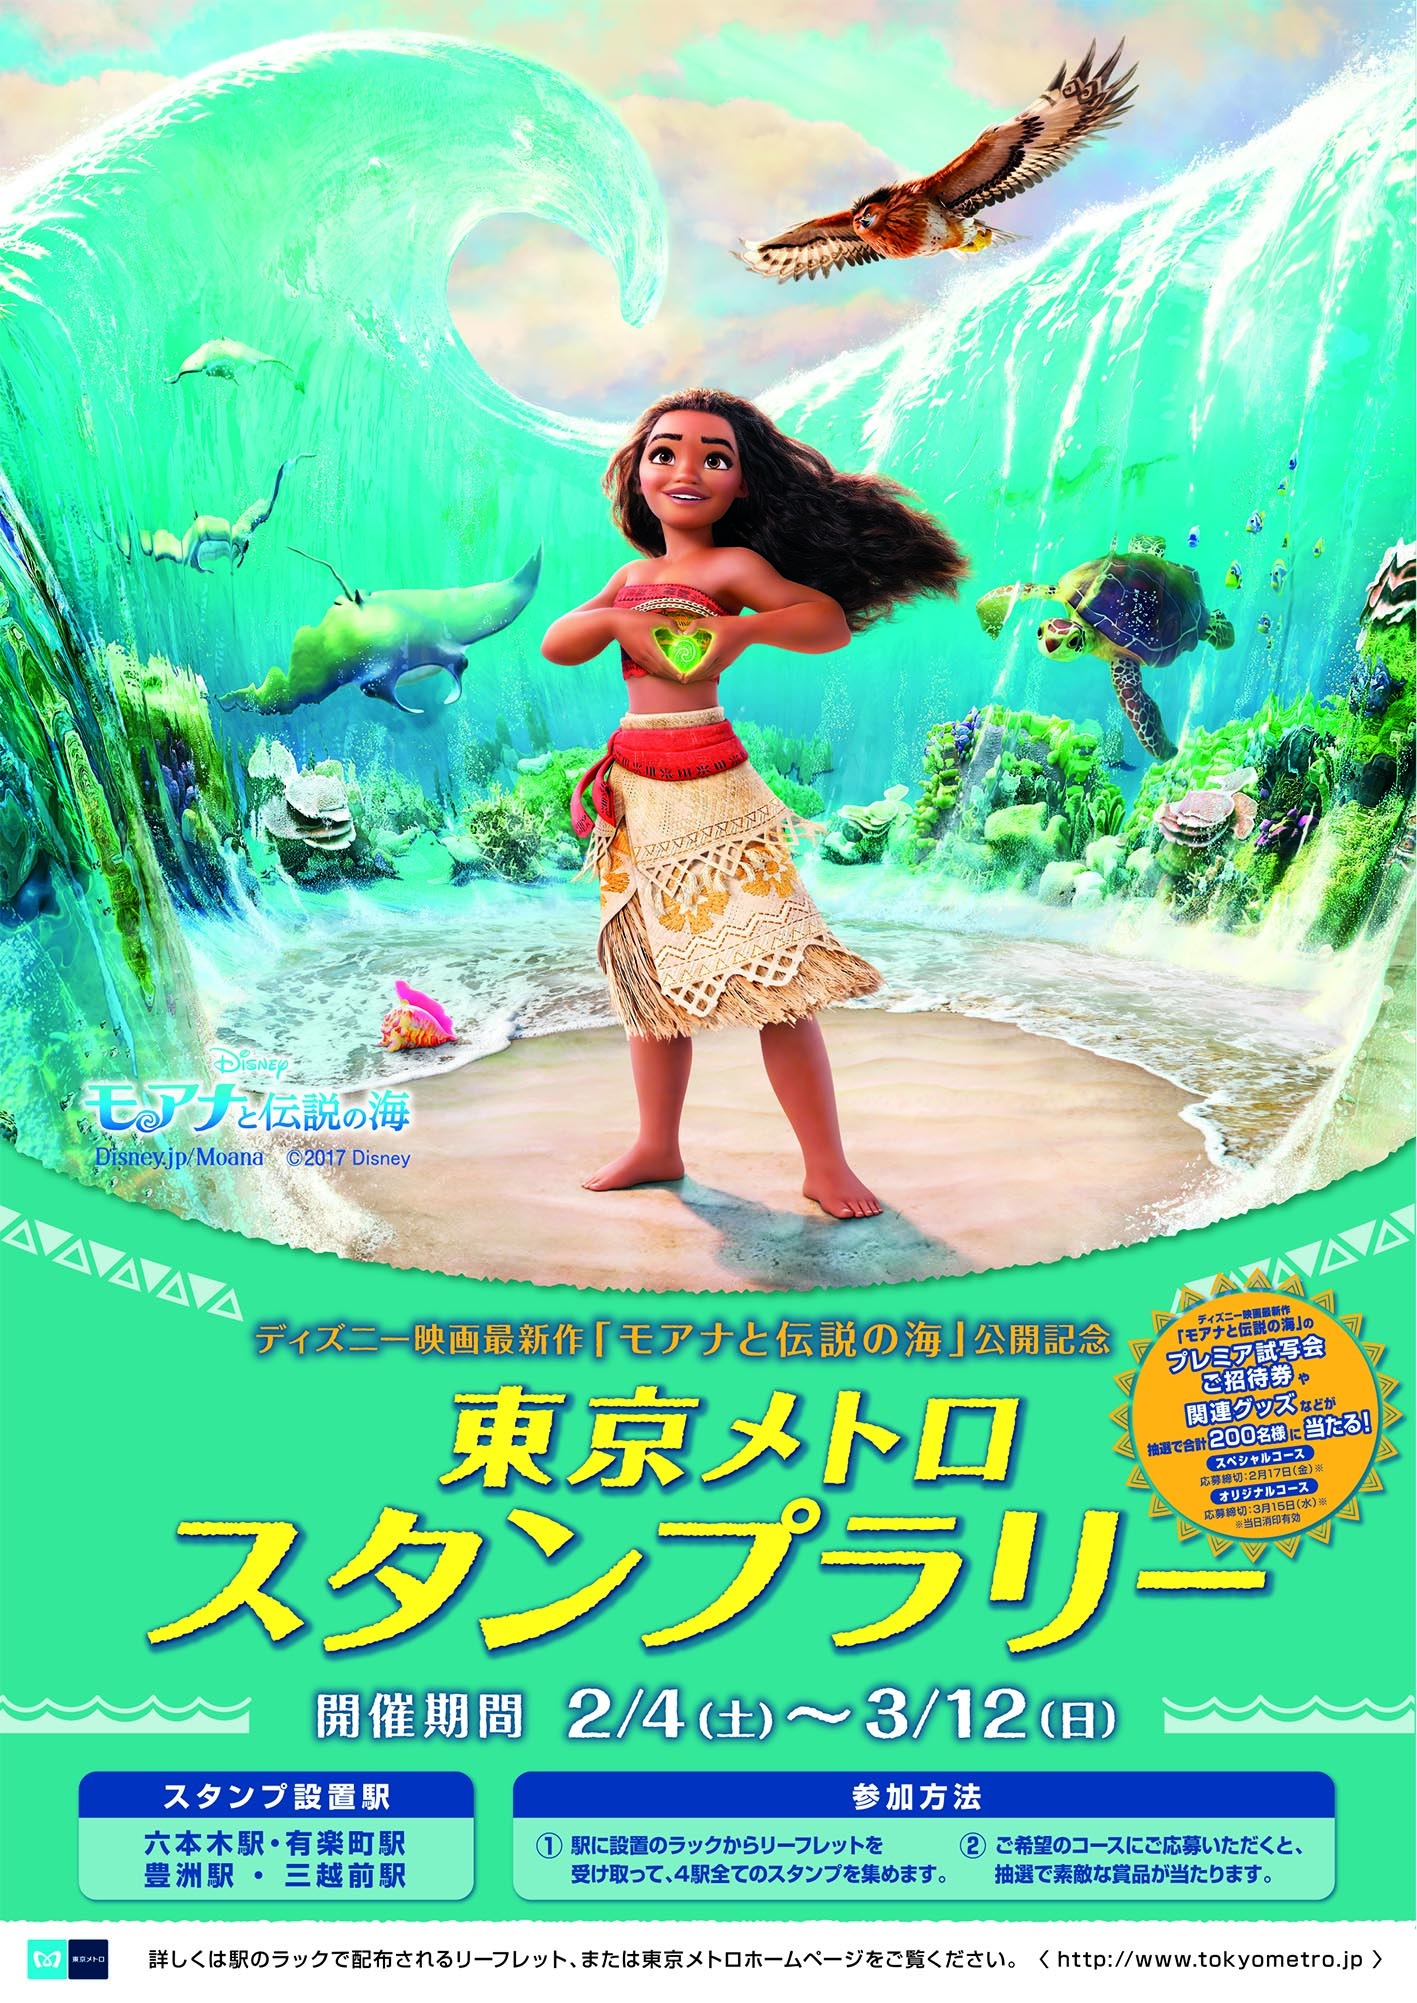 ディズニー映画最新作 モアナと伝説の海 公開記念 東京メトロスタンプラリーを開催します 東京メトロのプレスリリース